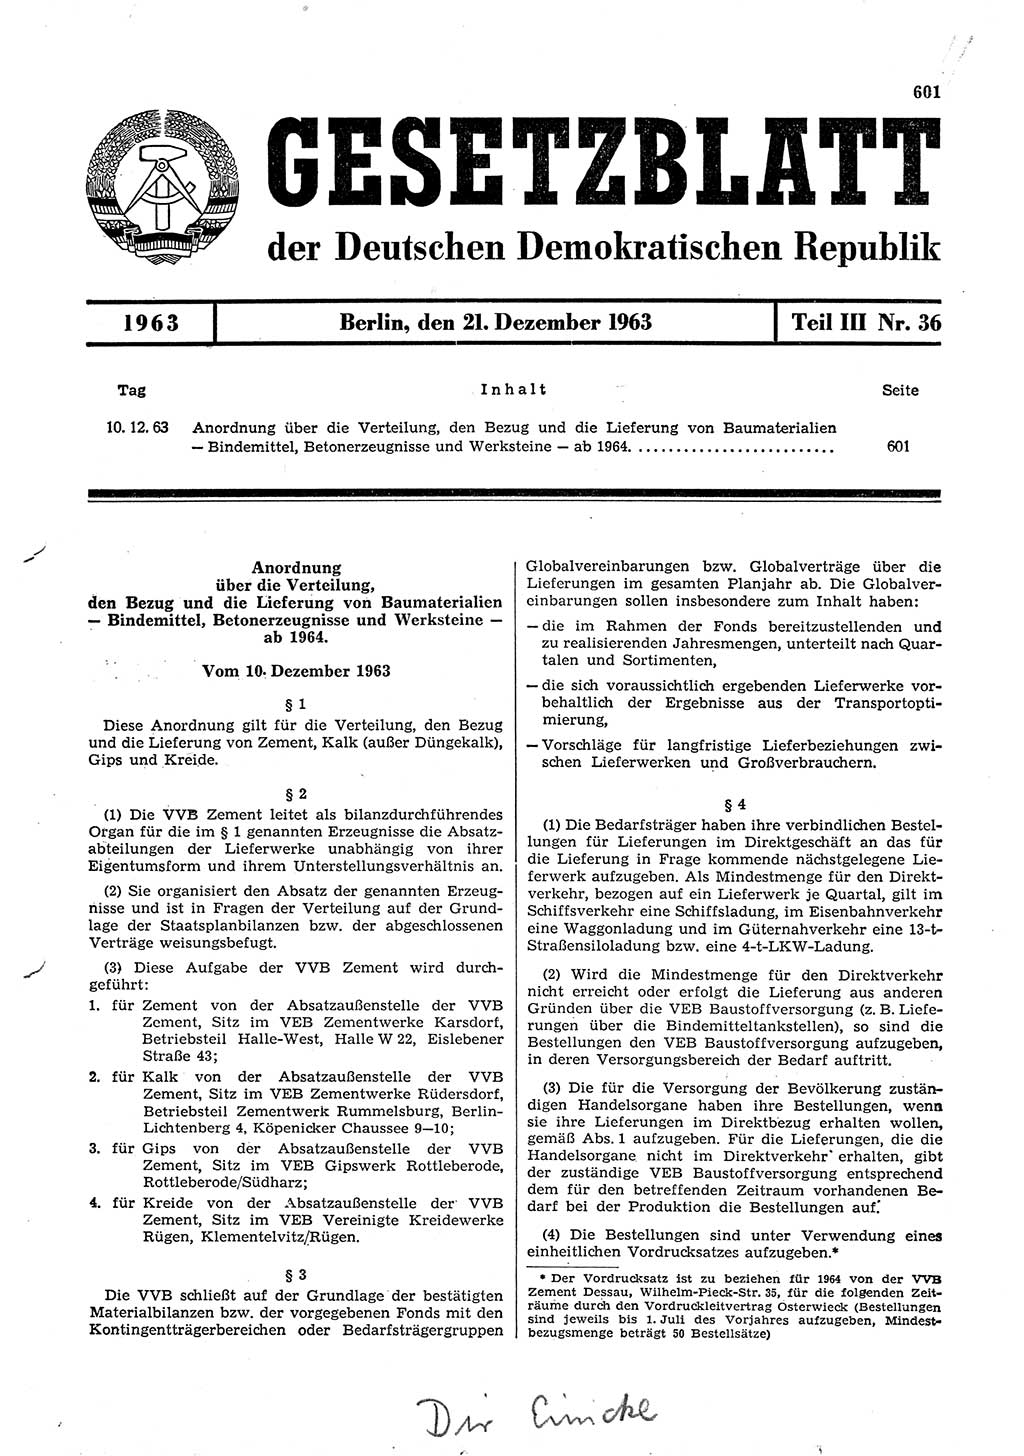 Gesetzblatt (GBl.) der Deutschen Demokratischen Republik (DDR) Teil ⅠⅠⅠ 1963, Seite 601 (GBl. DDR ⅠⅠⅠ 1963, S. 601)